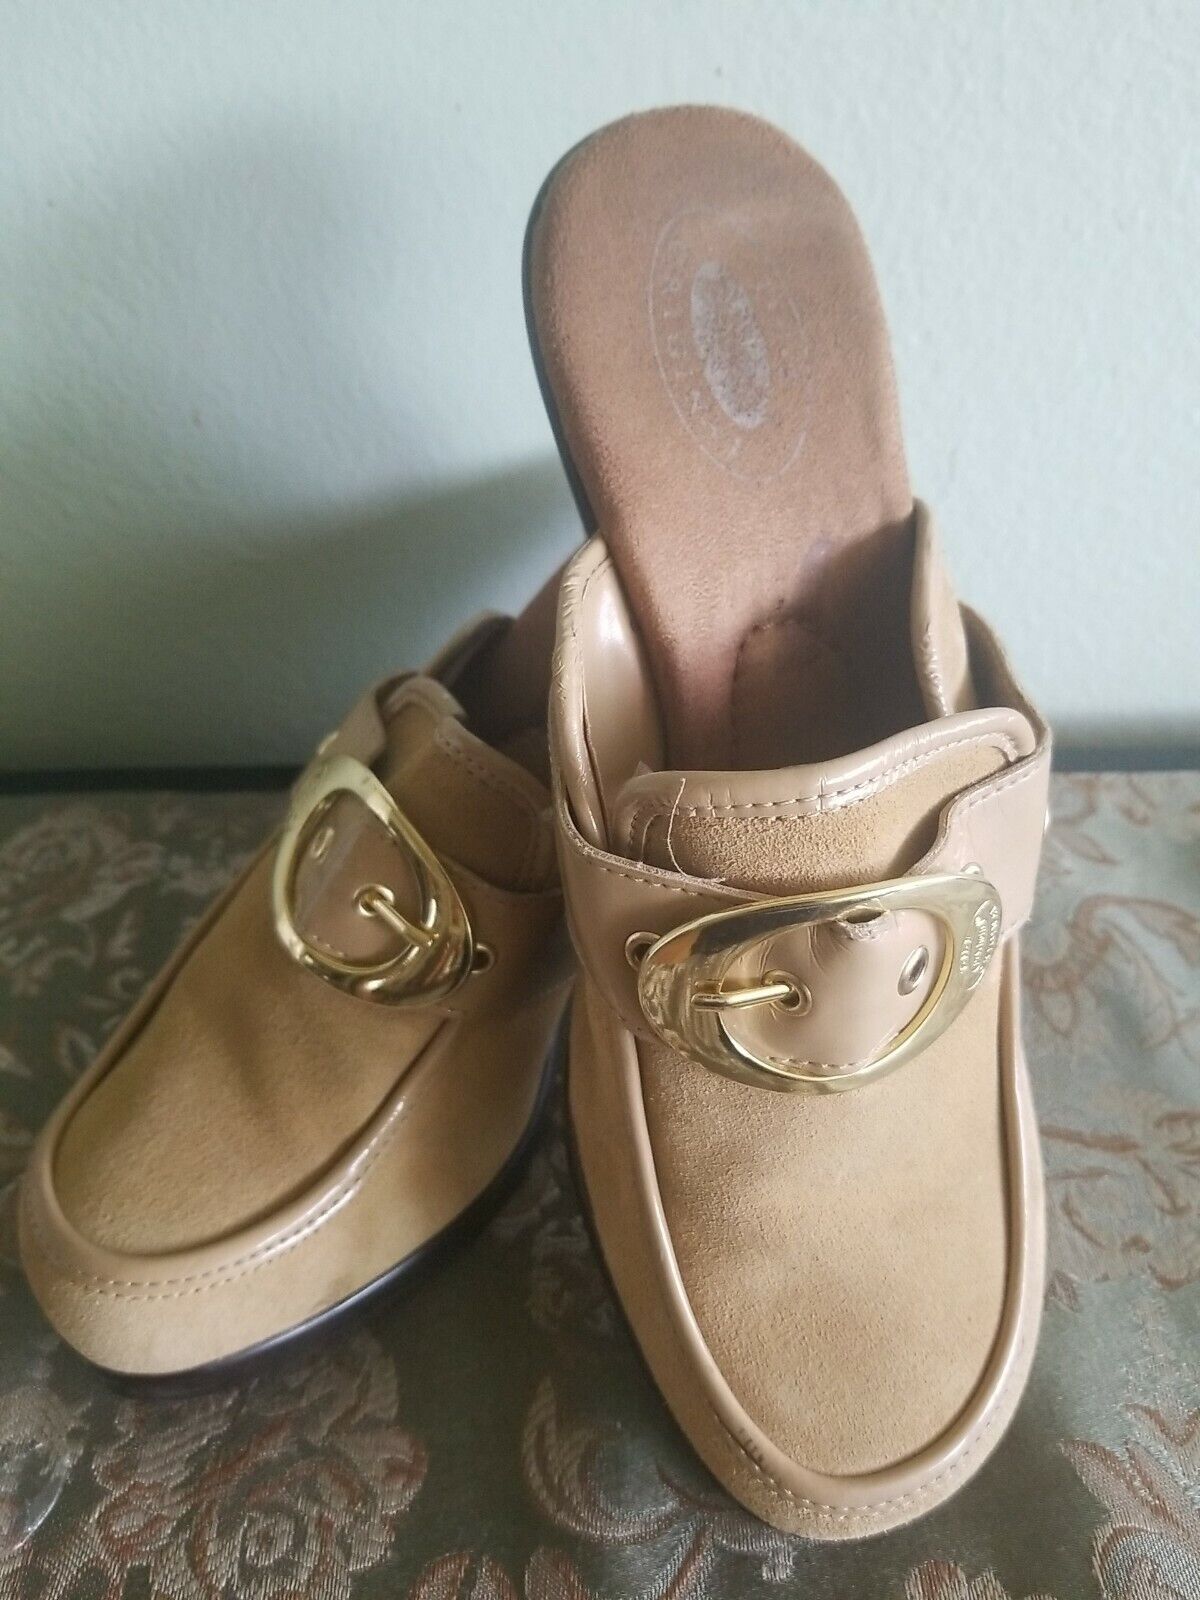 Women's Dr. Scholls Original Platform Sandals Suede Shoes Size 8M